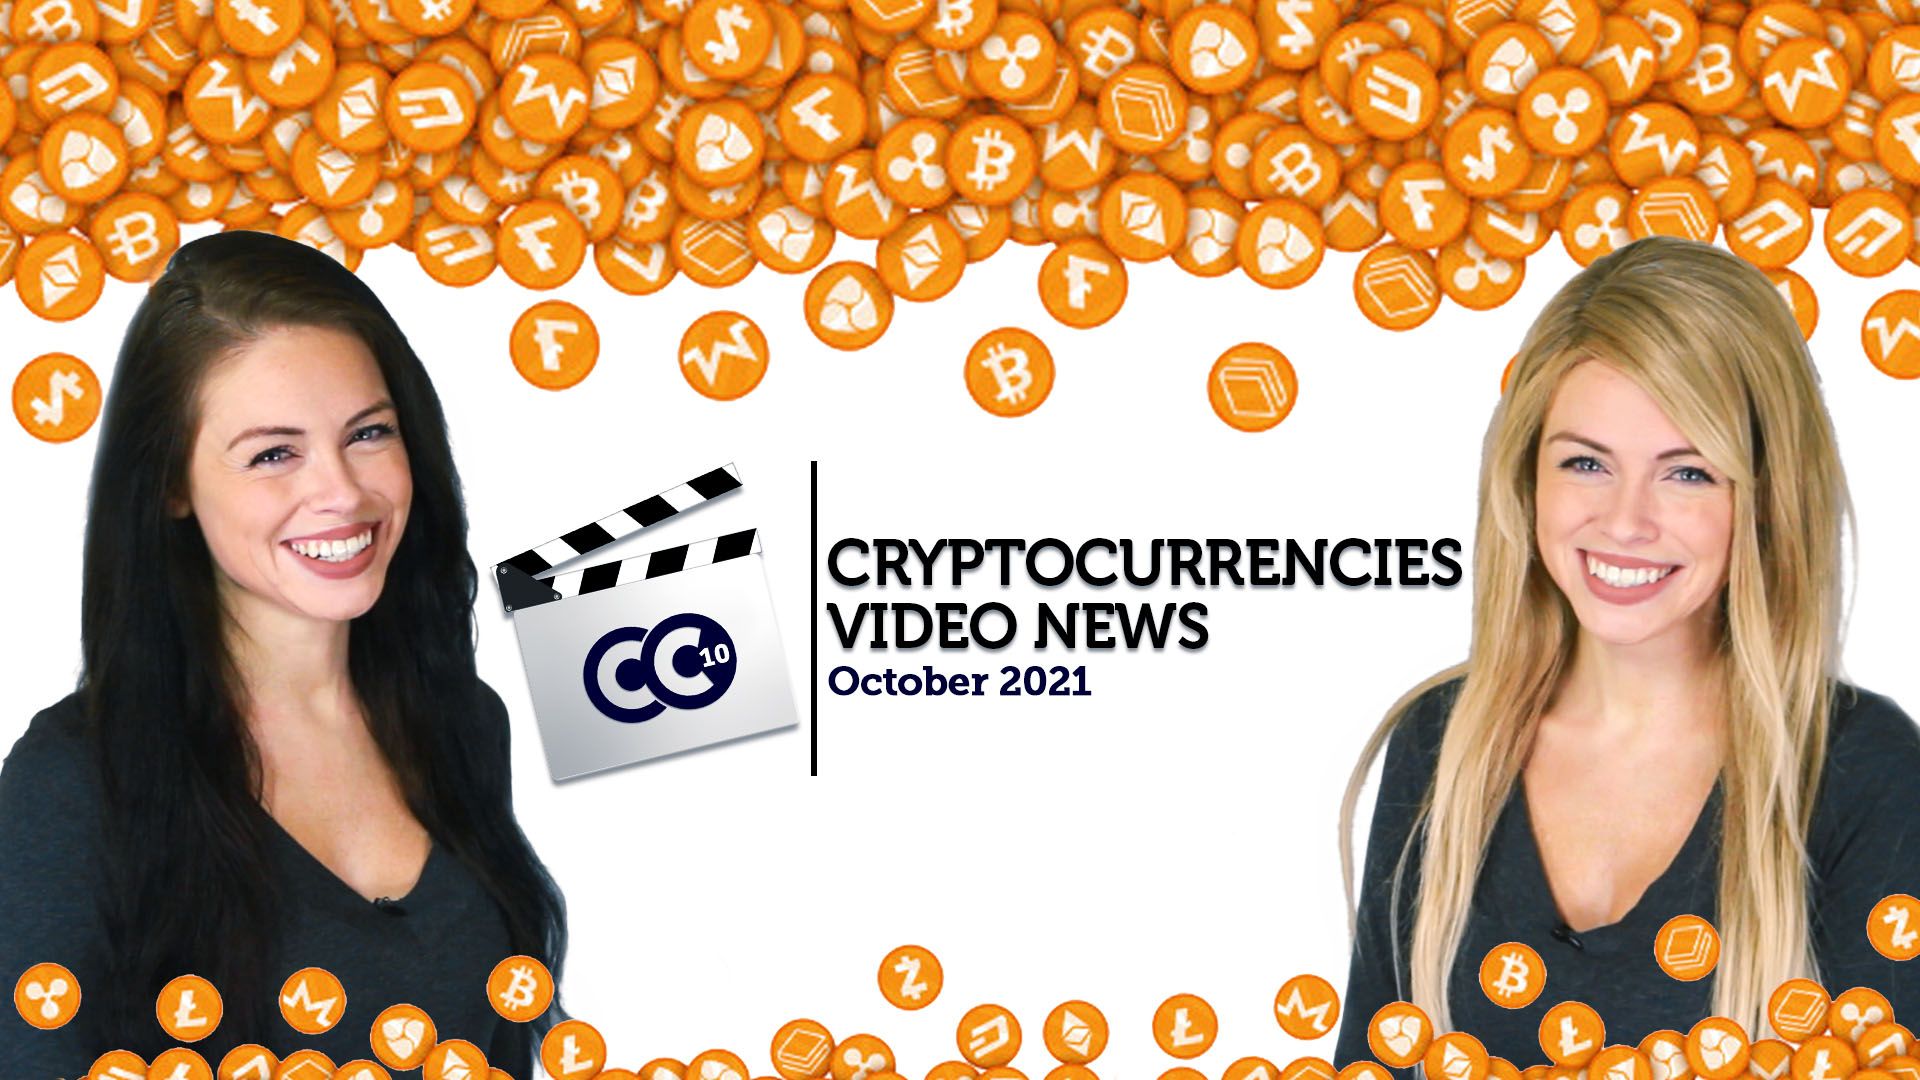 Cryptocurrencies Video News - October 2021